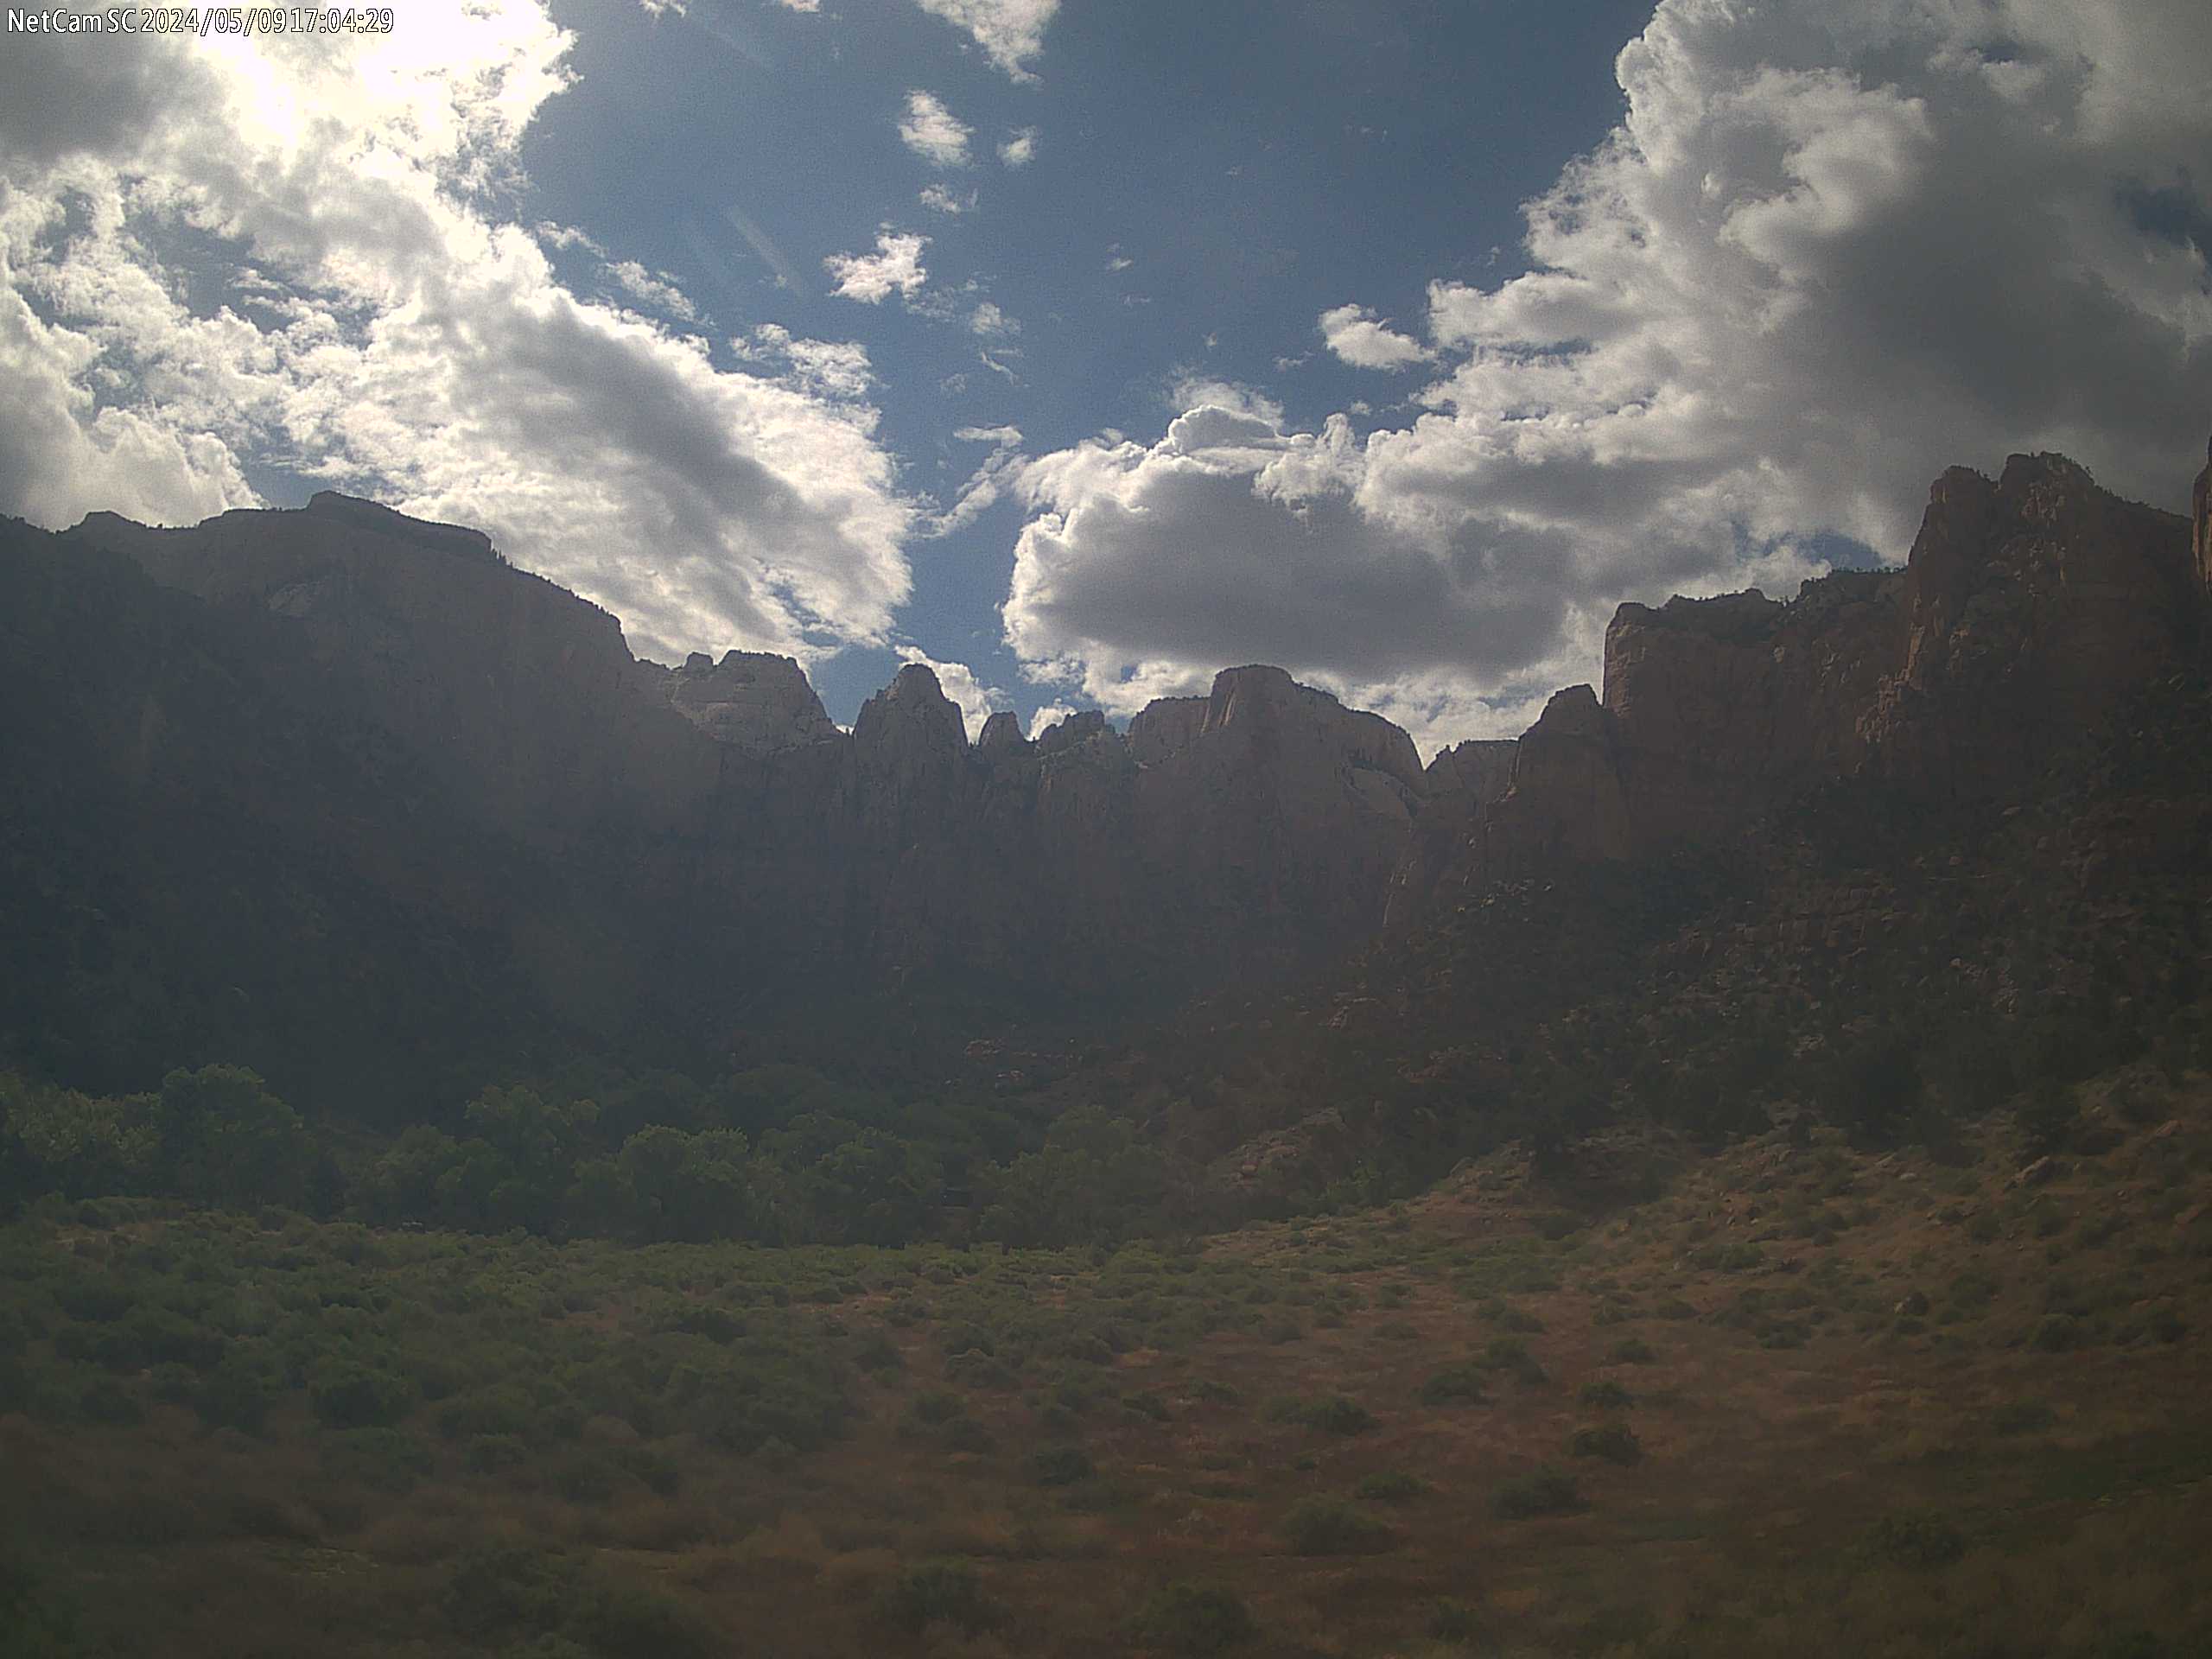 Zion National Park Webcam 99